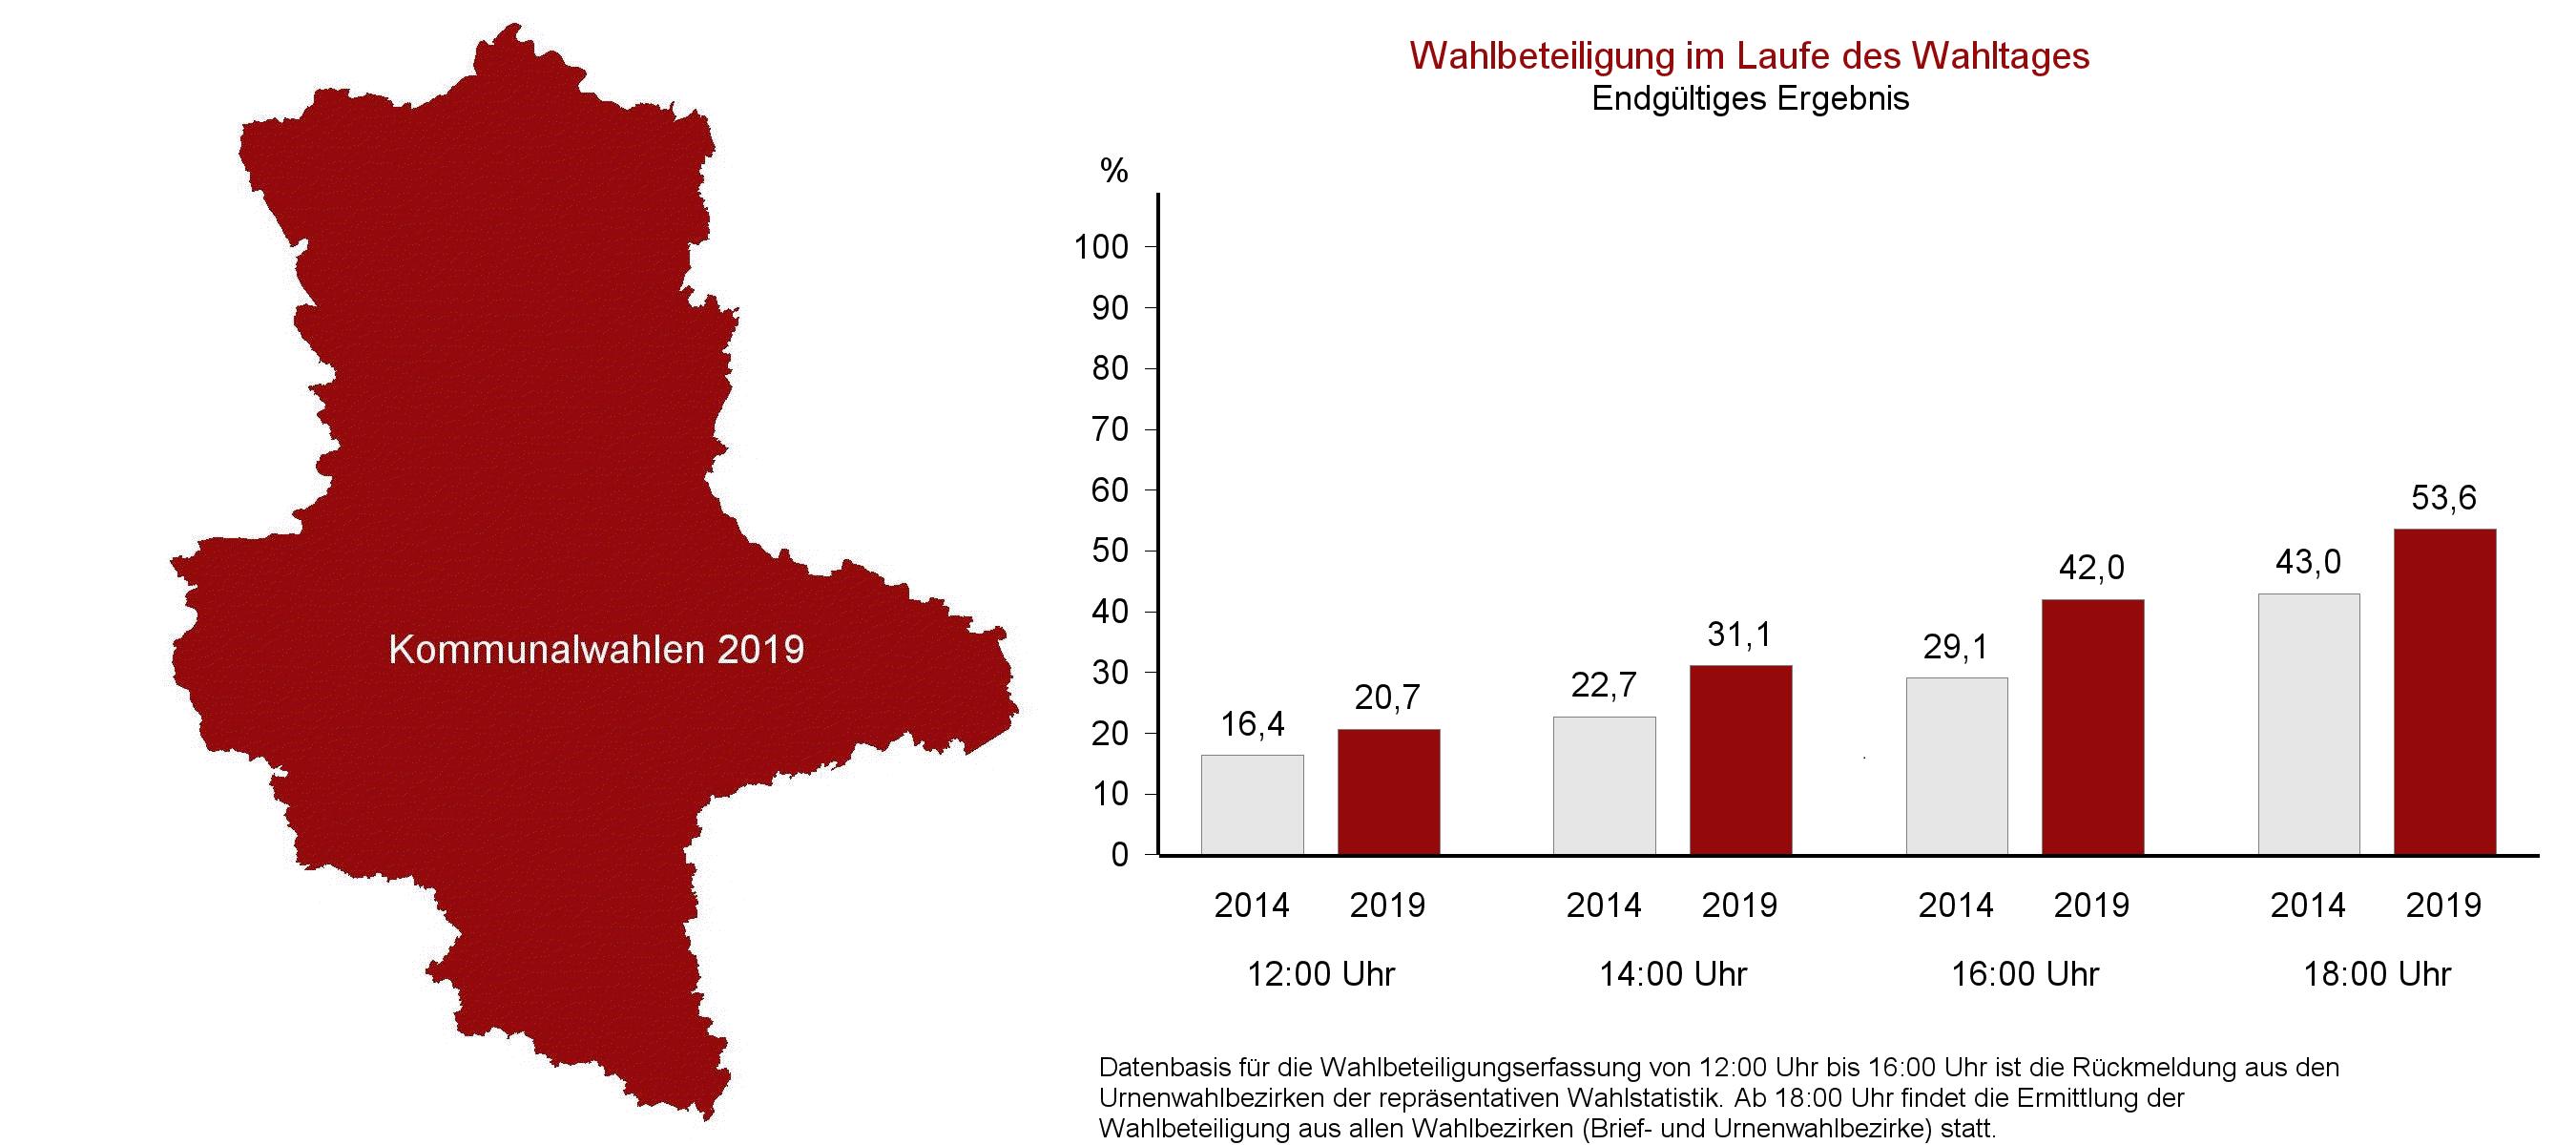 Kommunalwahlen 2019 - Ergebnisse in Sachsen-Anhalt